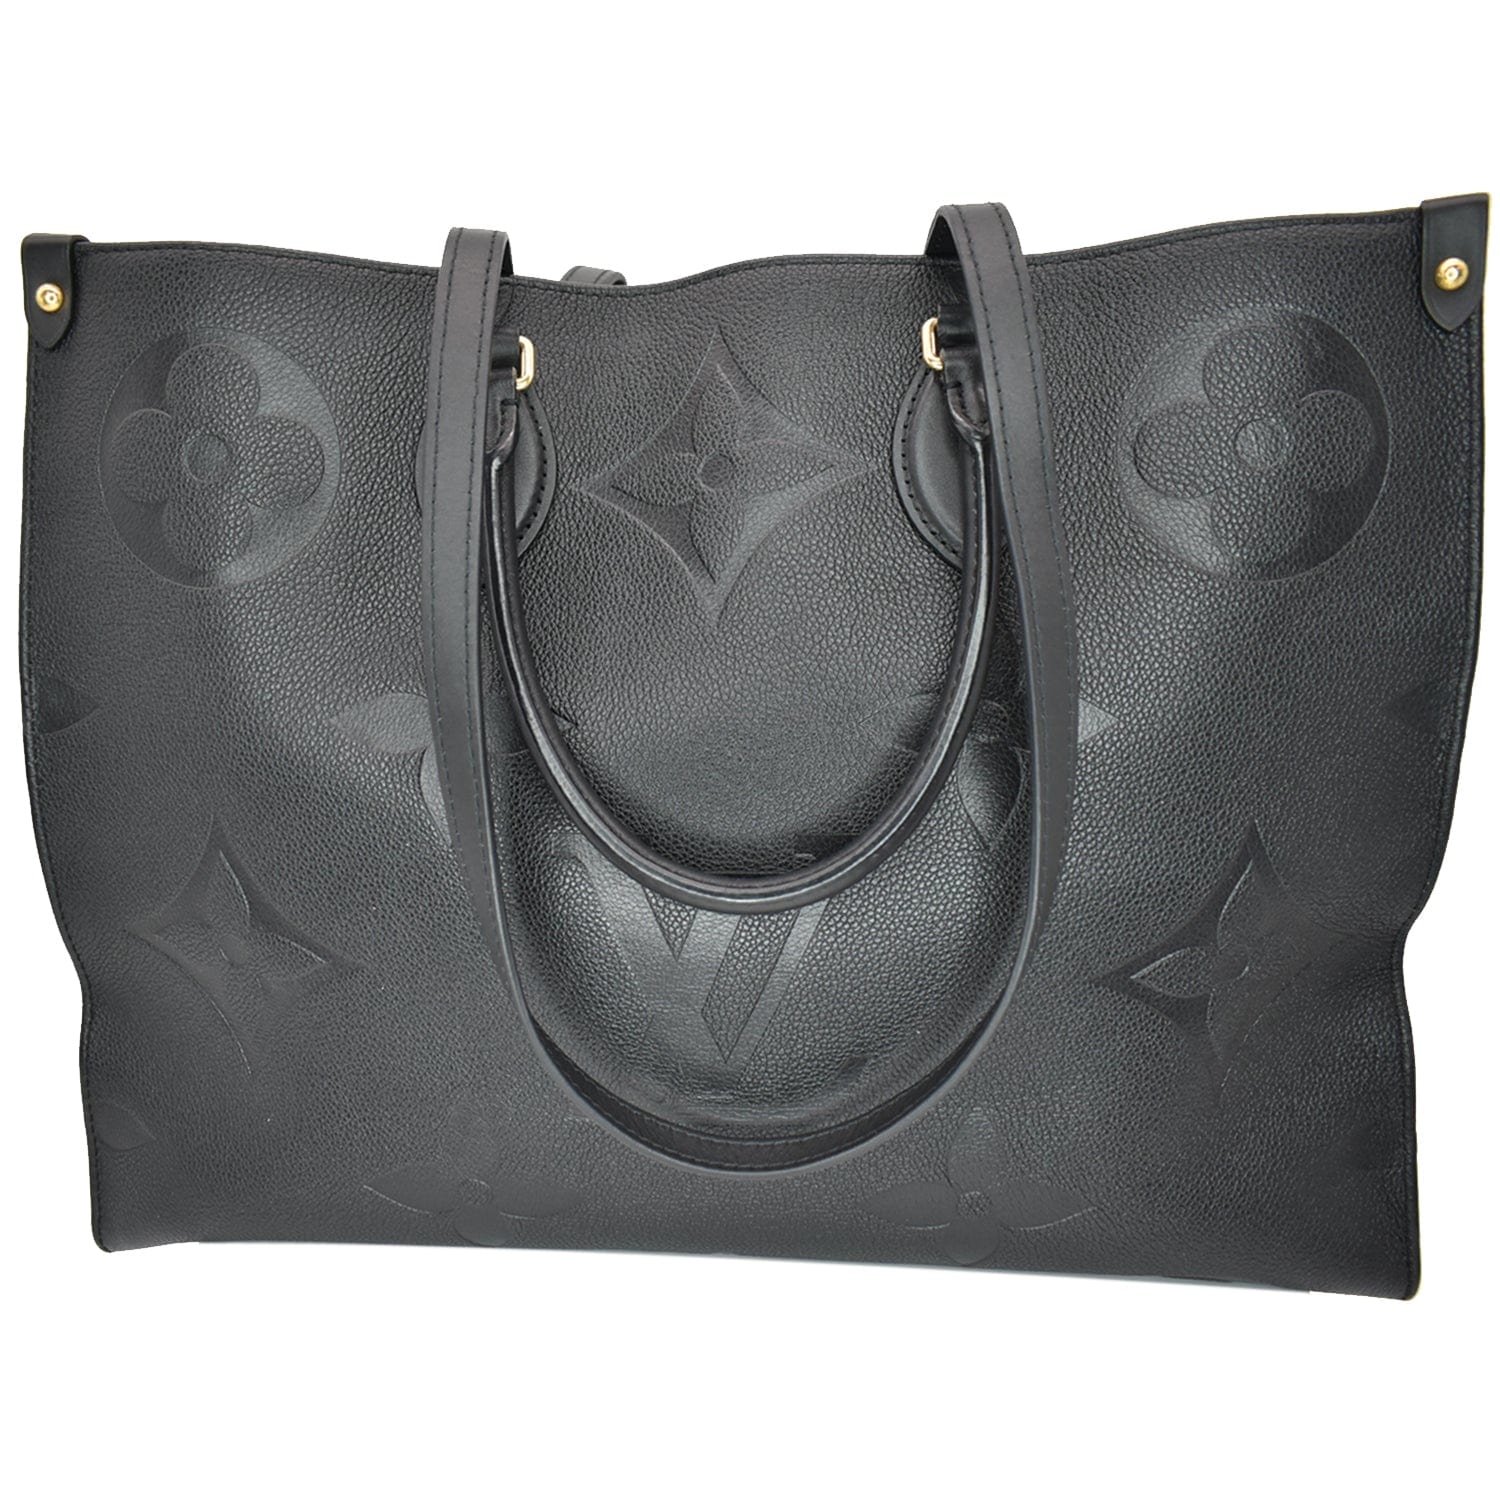 Authentic Louis Vuitton Black Monogram Empreinte Leather CarryAll